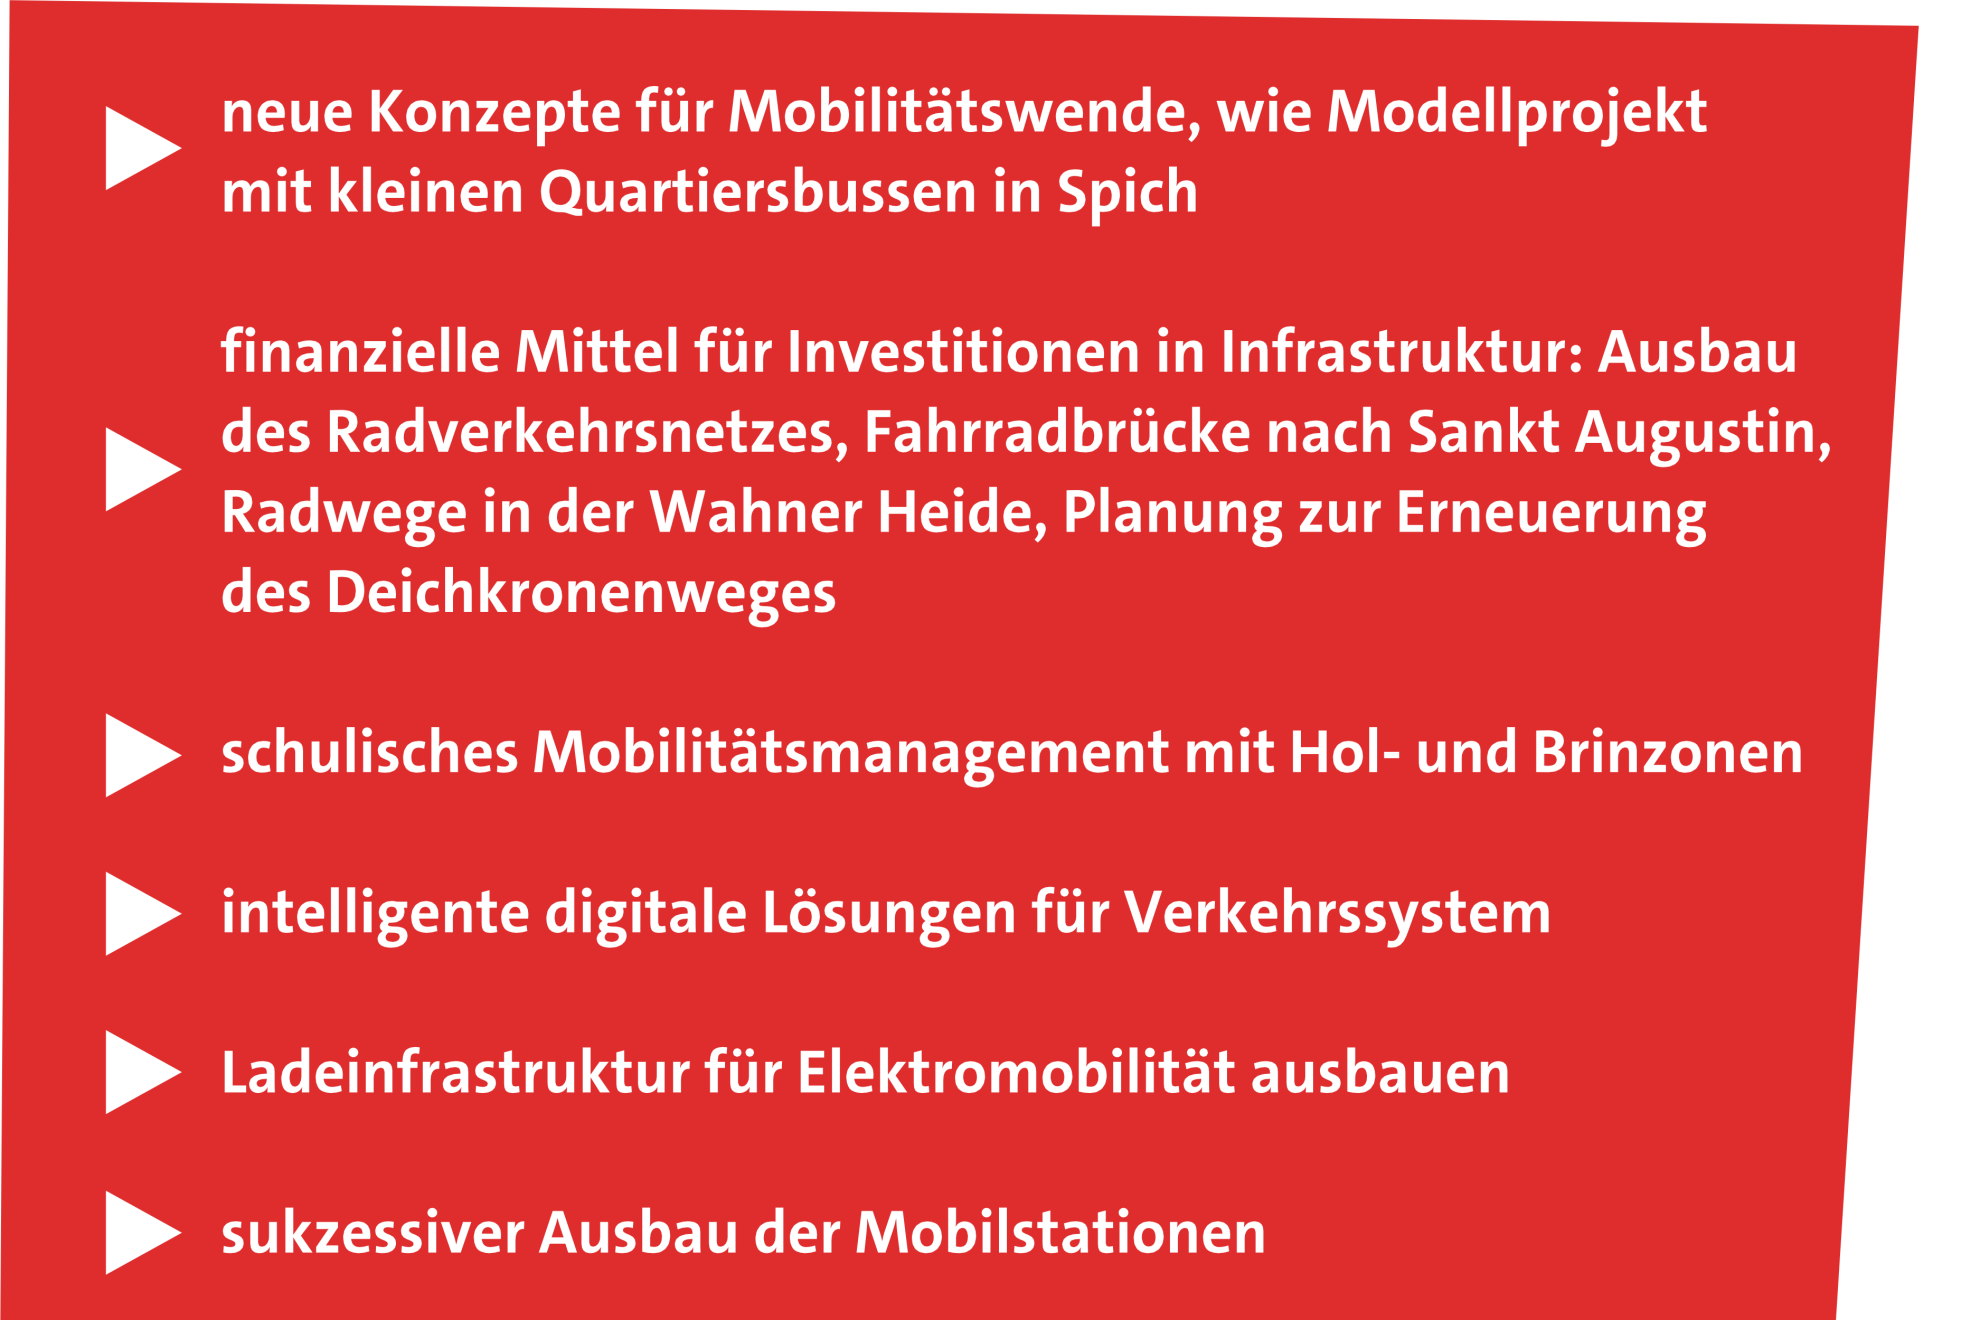 202301_Hp_Haushalt_Troisdorf_Stadt_2023_SPD_Fraktion_Infrastruktur_Mobilitaet_Mobilitaetswende_Fahrrad_Radwege_Digitalisierung_Verkehrssystem